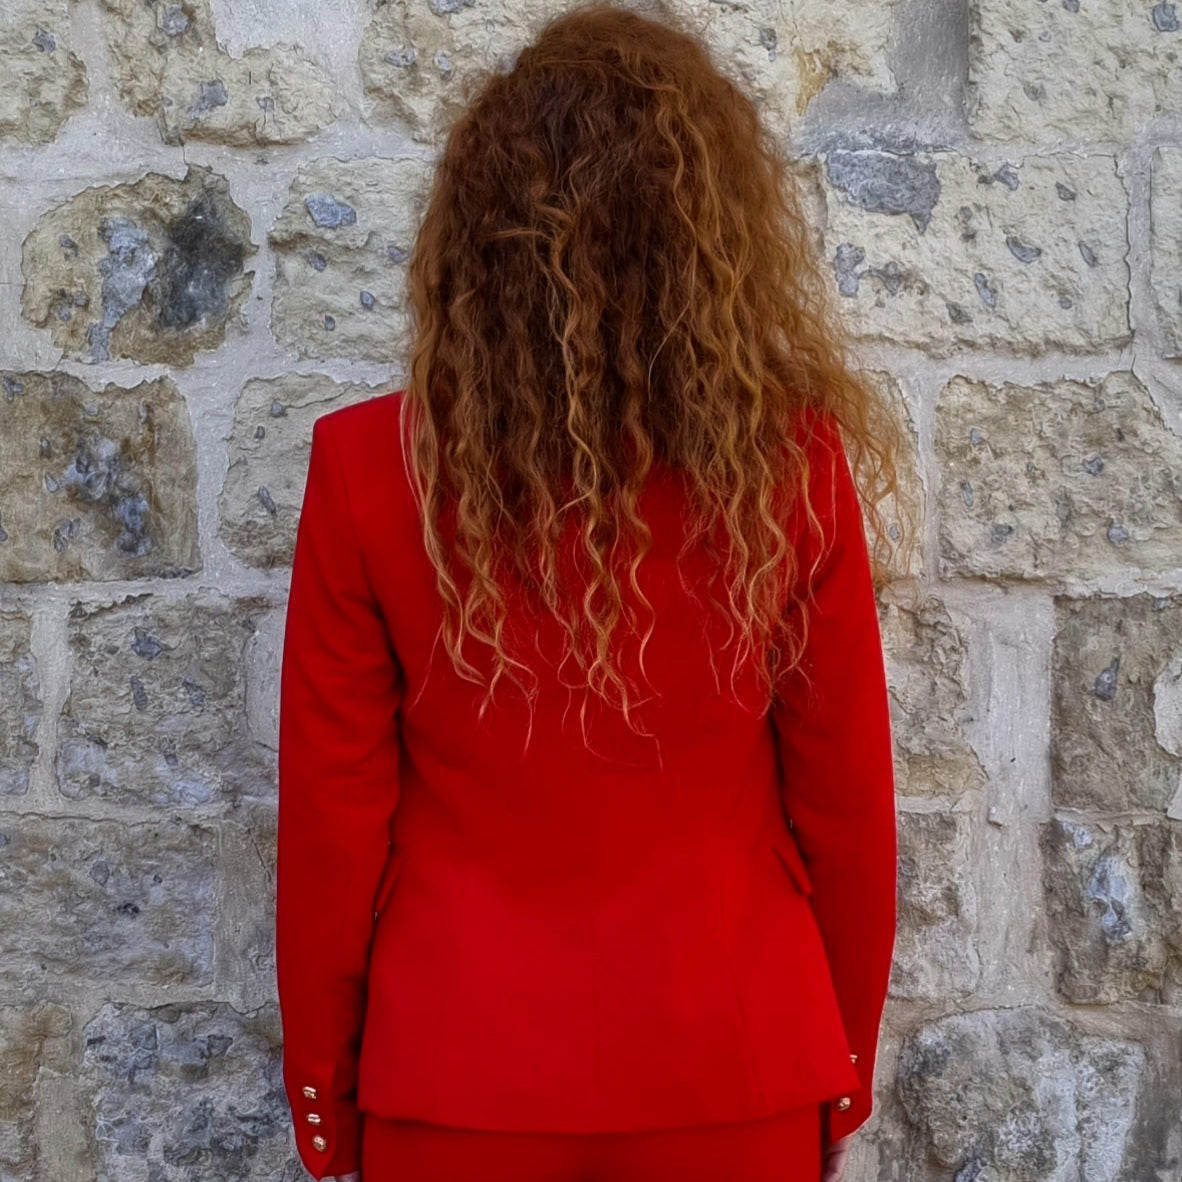 Beyoncé red blazer